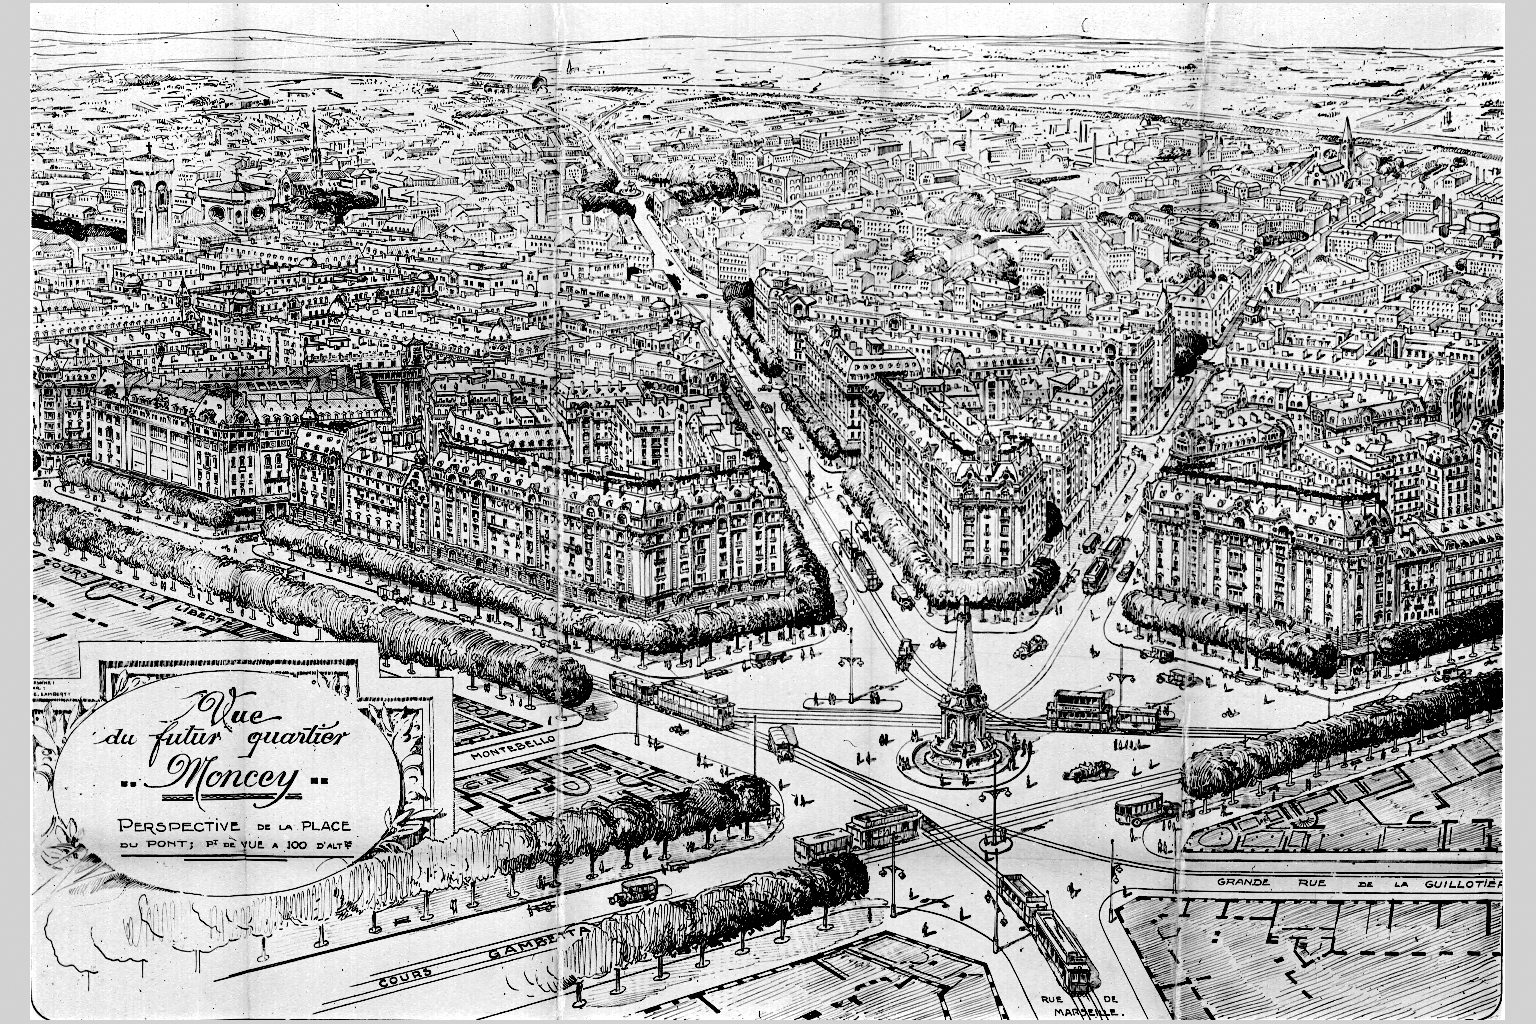 Projet du futur quartier Moncey par C. Chalumeau, perspective de la place du Pont : photographie NB sur plaque de verre (20/06/1935, cote : 15PH/1/378)